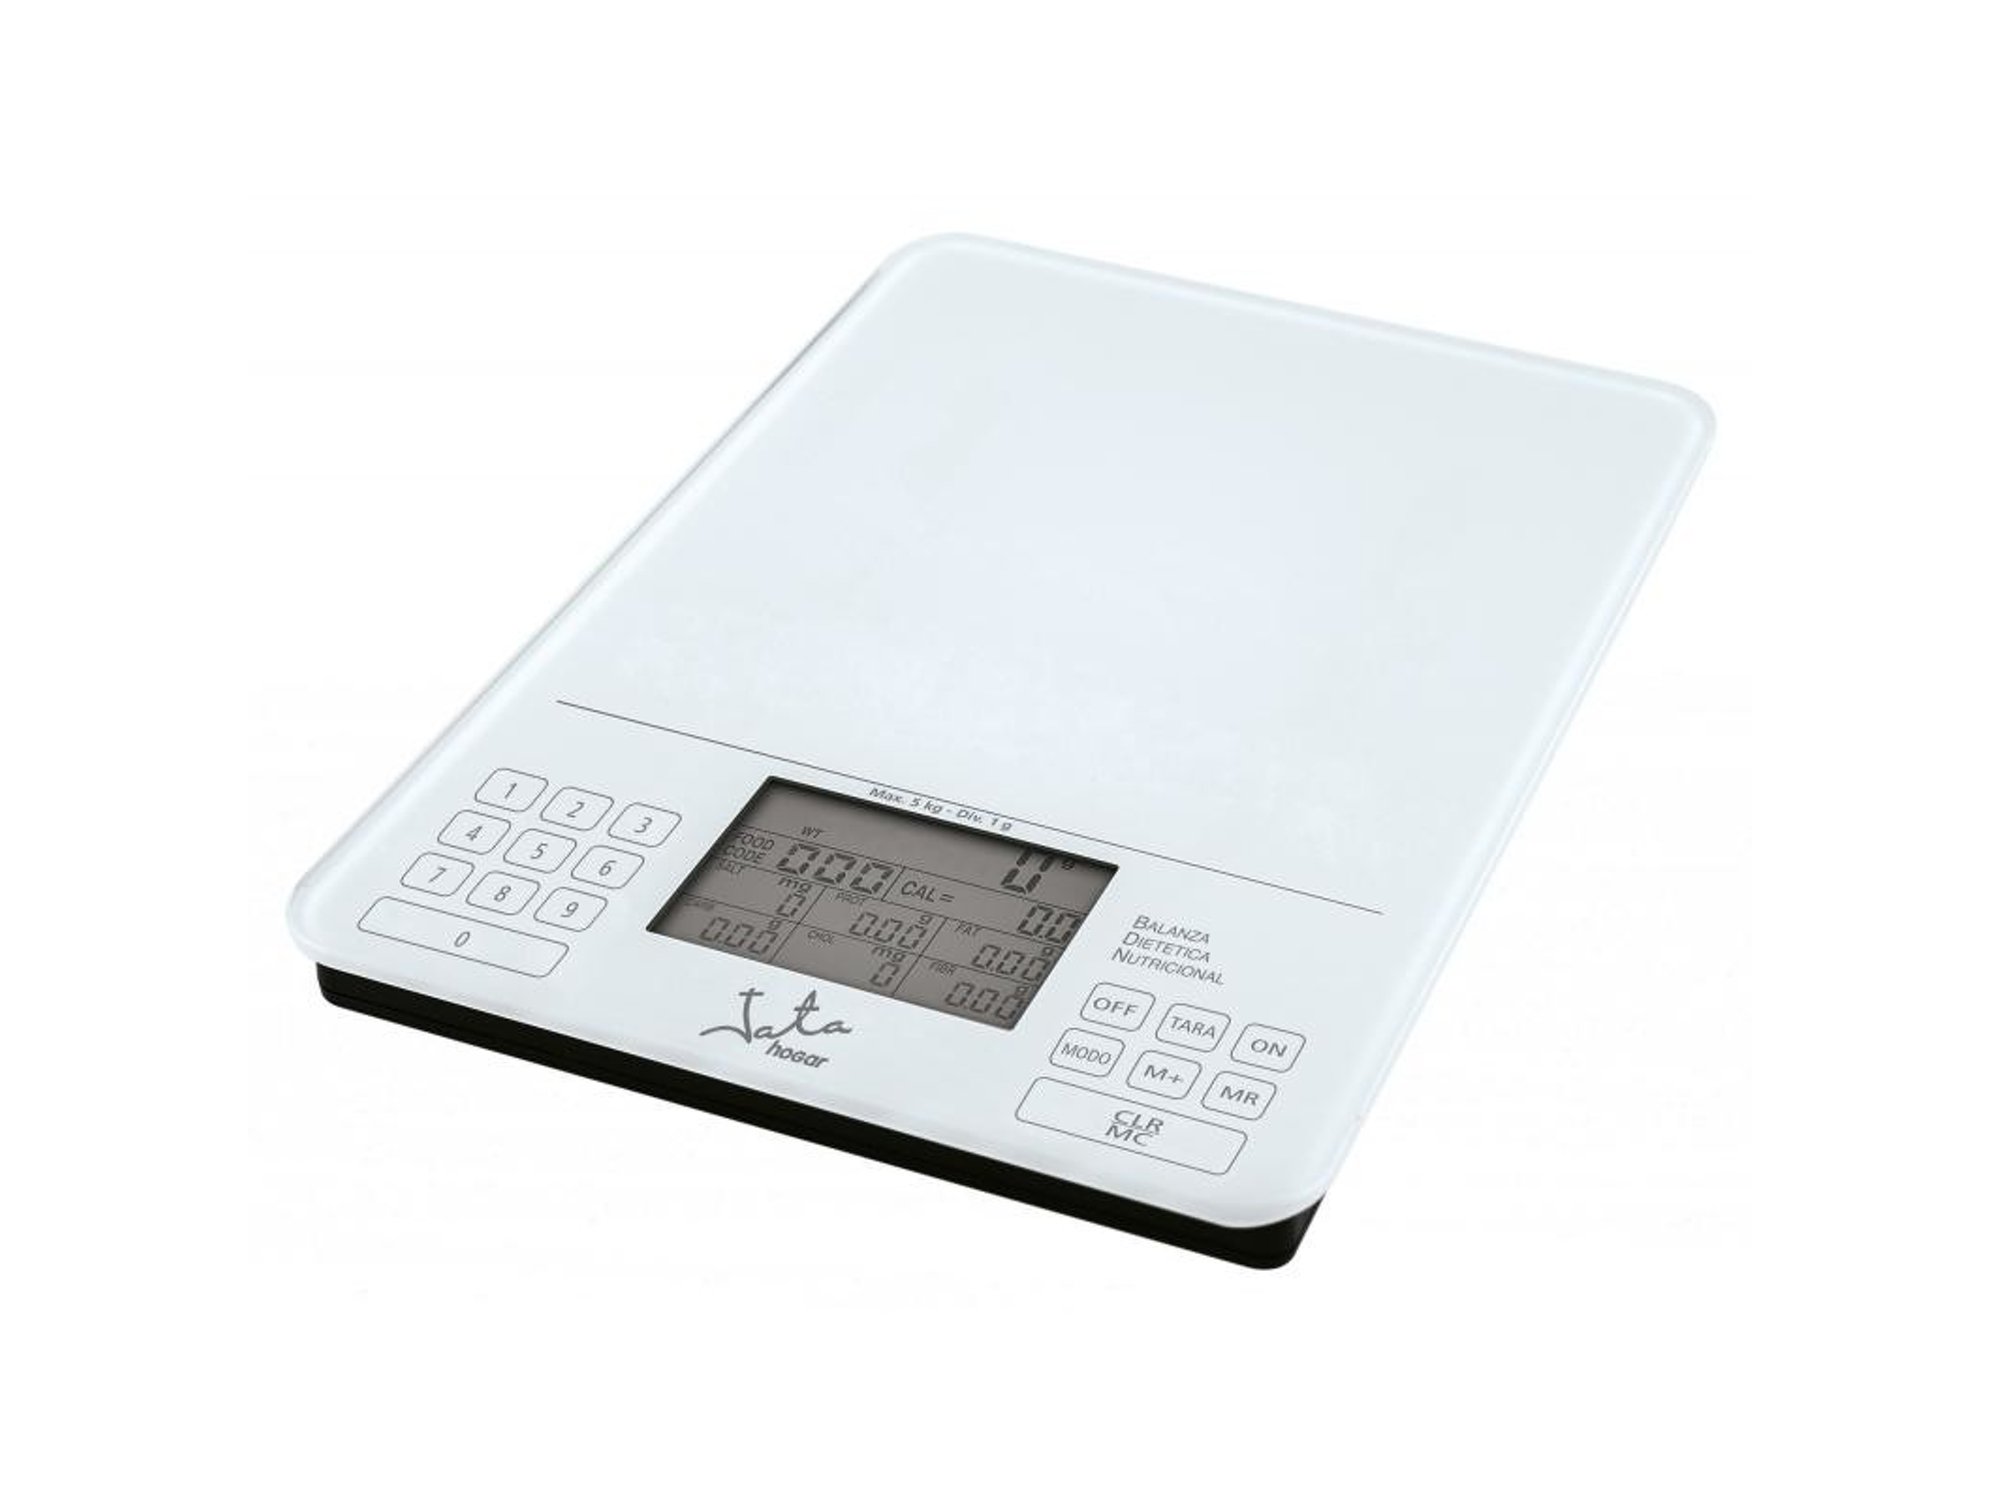 Jata Hogar Mod. 790 balanza vidrio blanco de cocina con analizador nutricional capacidad 5 kg 1